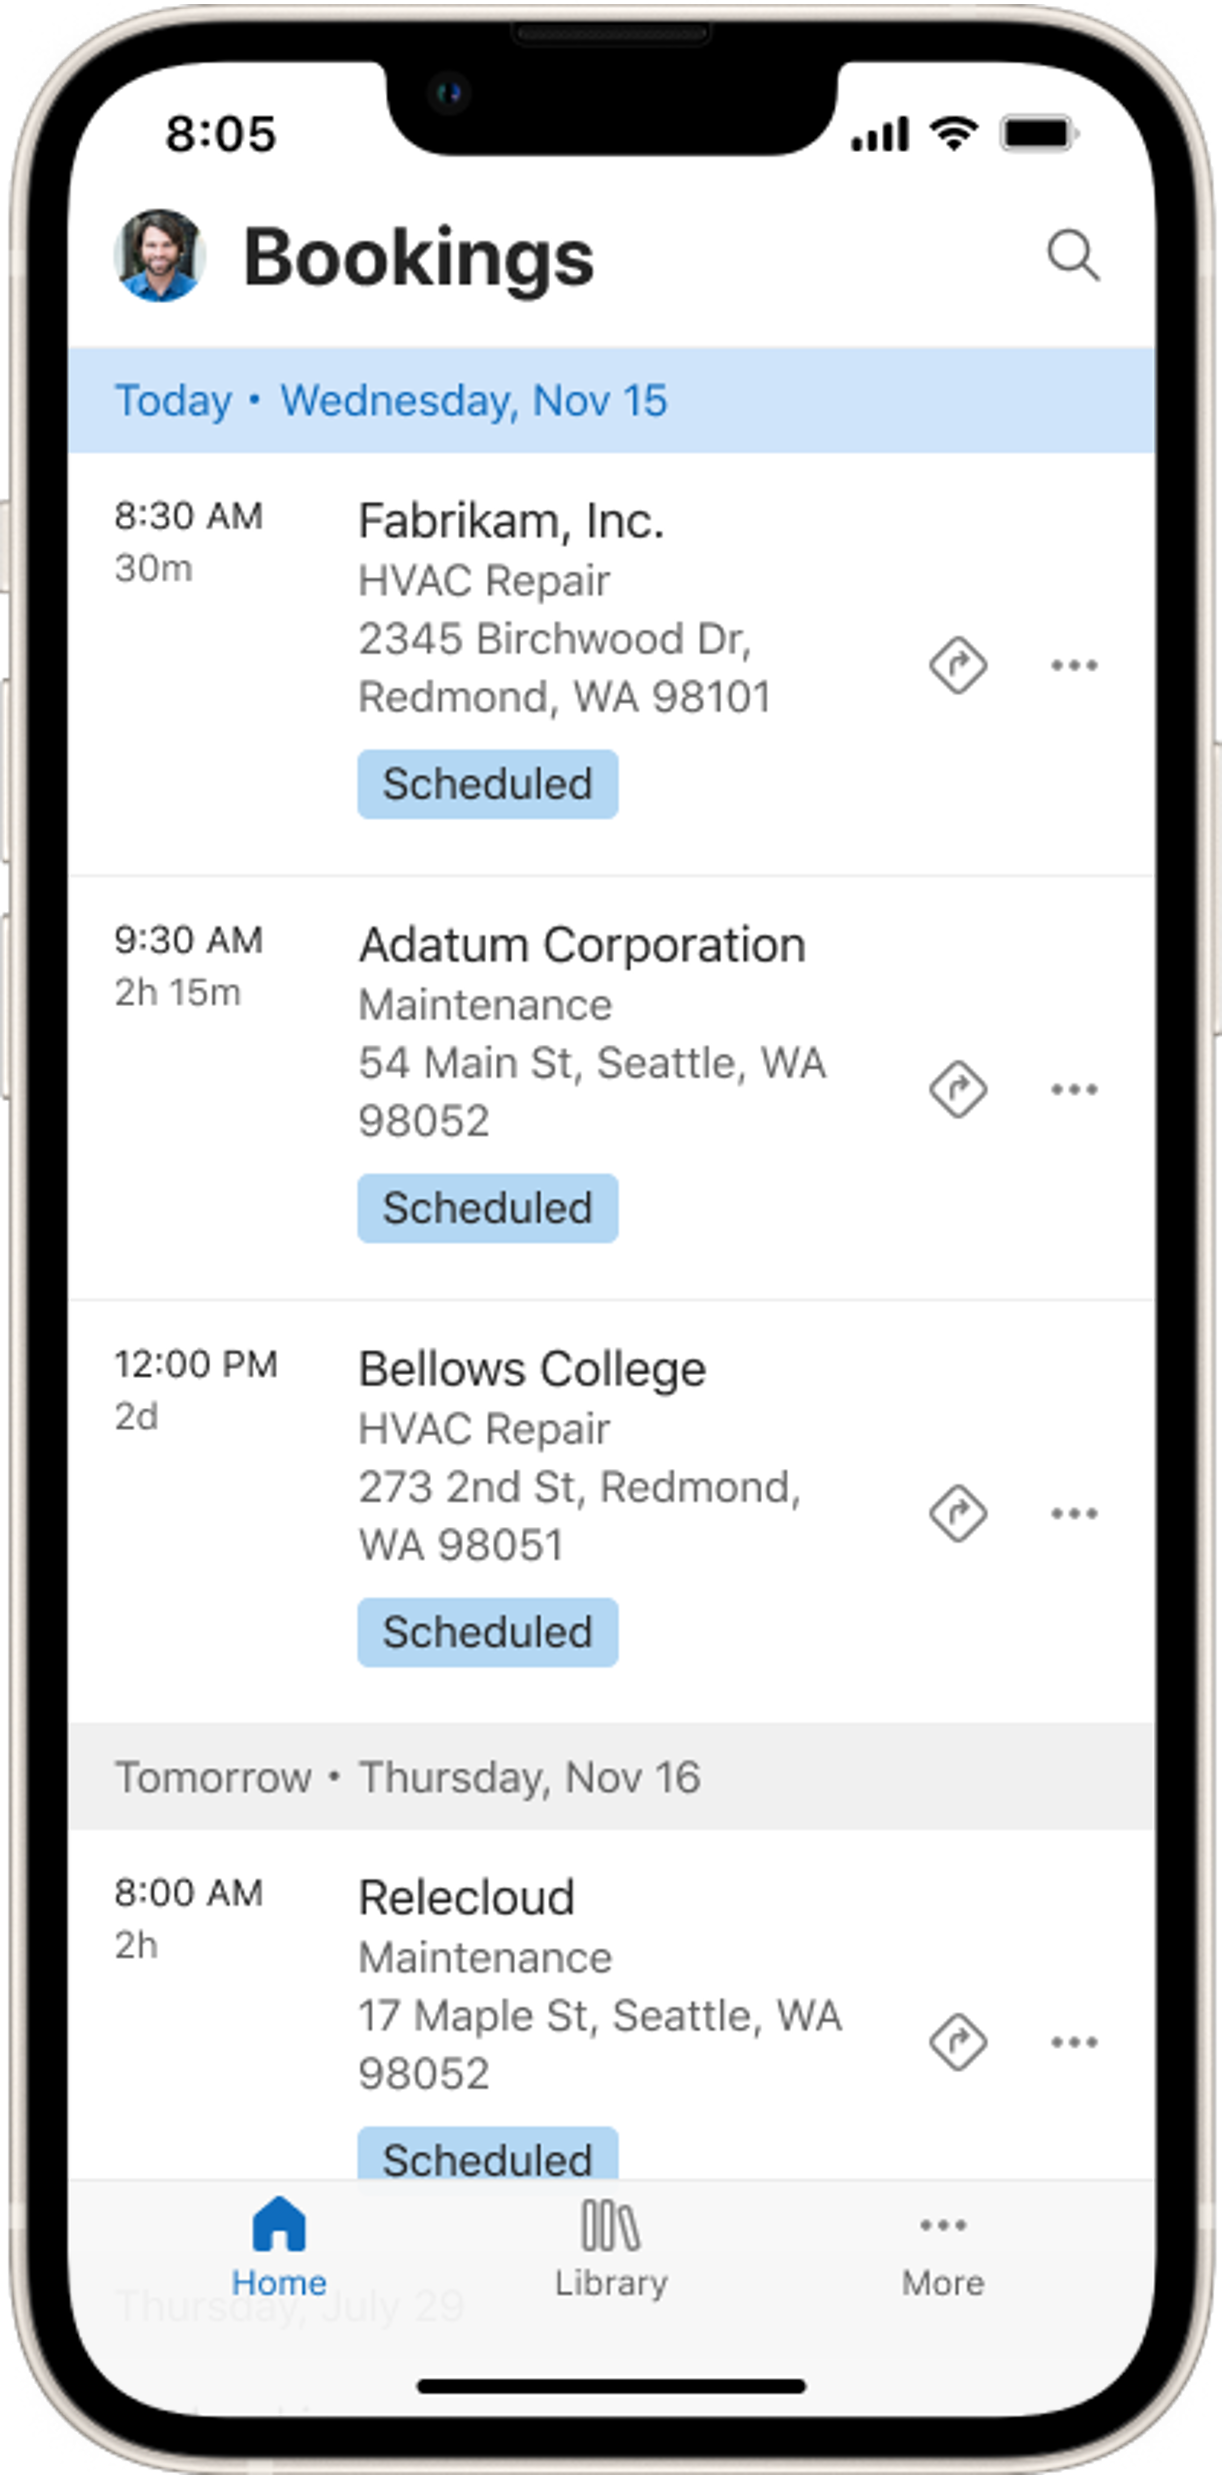 Darstellung eines mobilen Geräts, das die Agenda-Ansicht mit den Buchungen von heute und morgen in der mobilen Field Service-App zeigt.